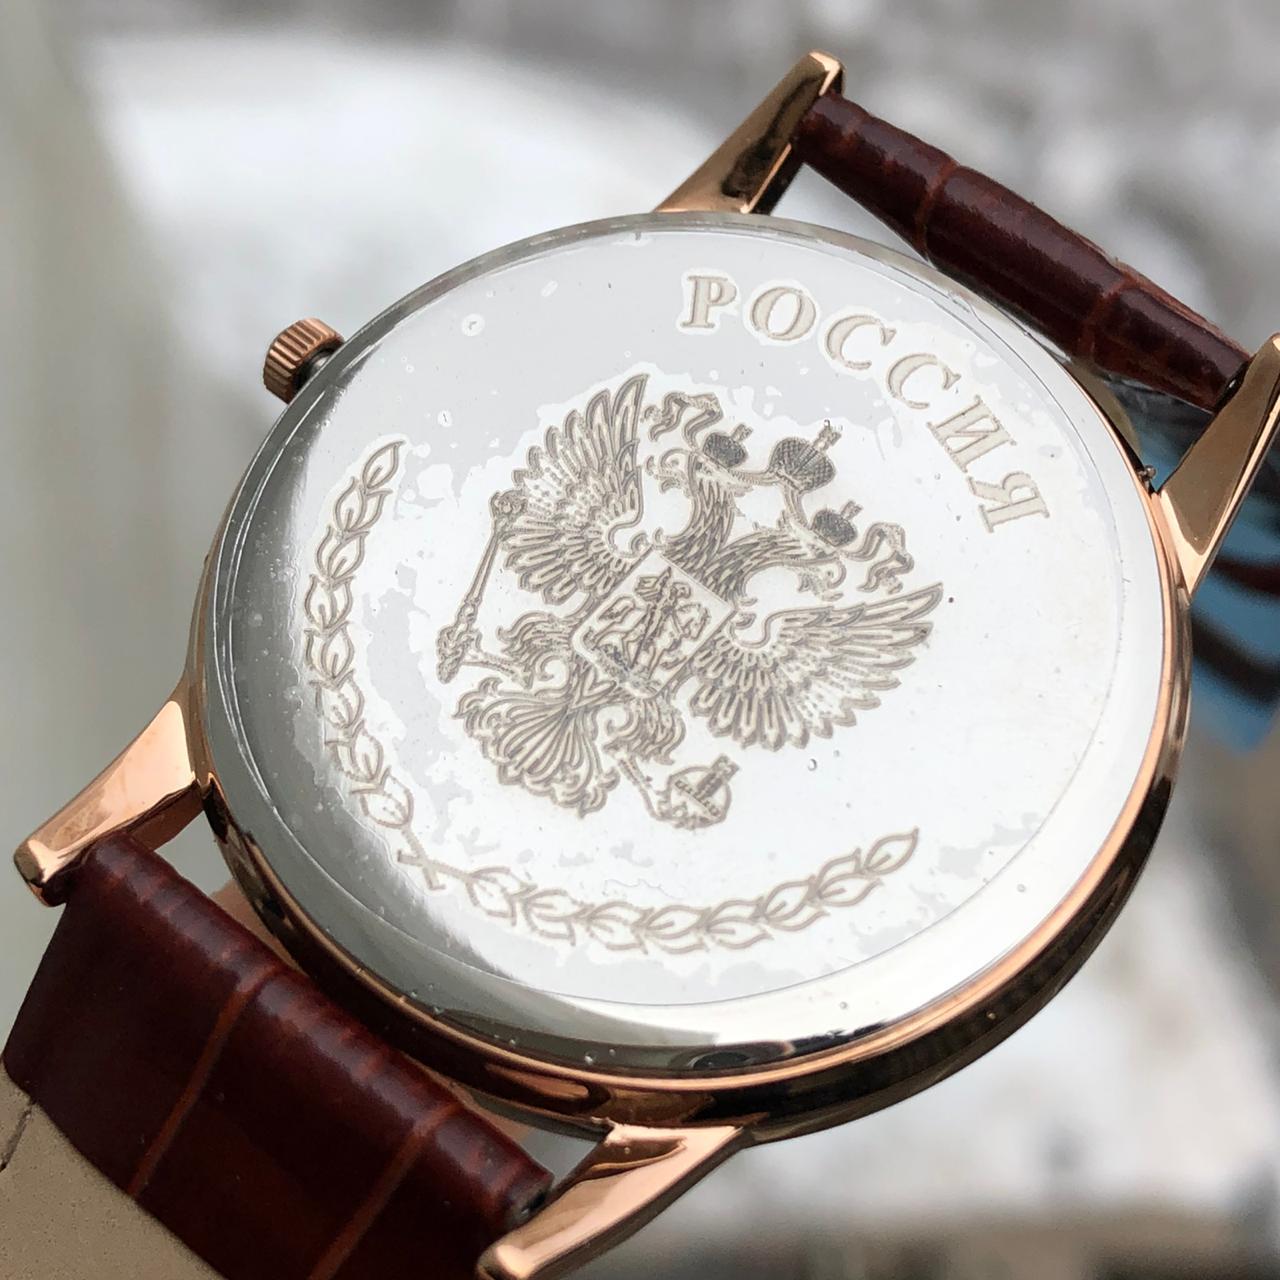 Đồng hồ Poljot phiên bản nước Nga  5129121R